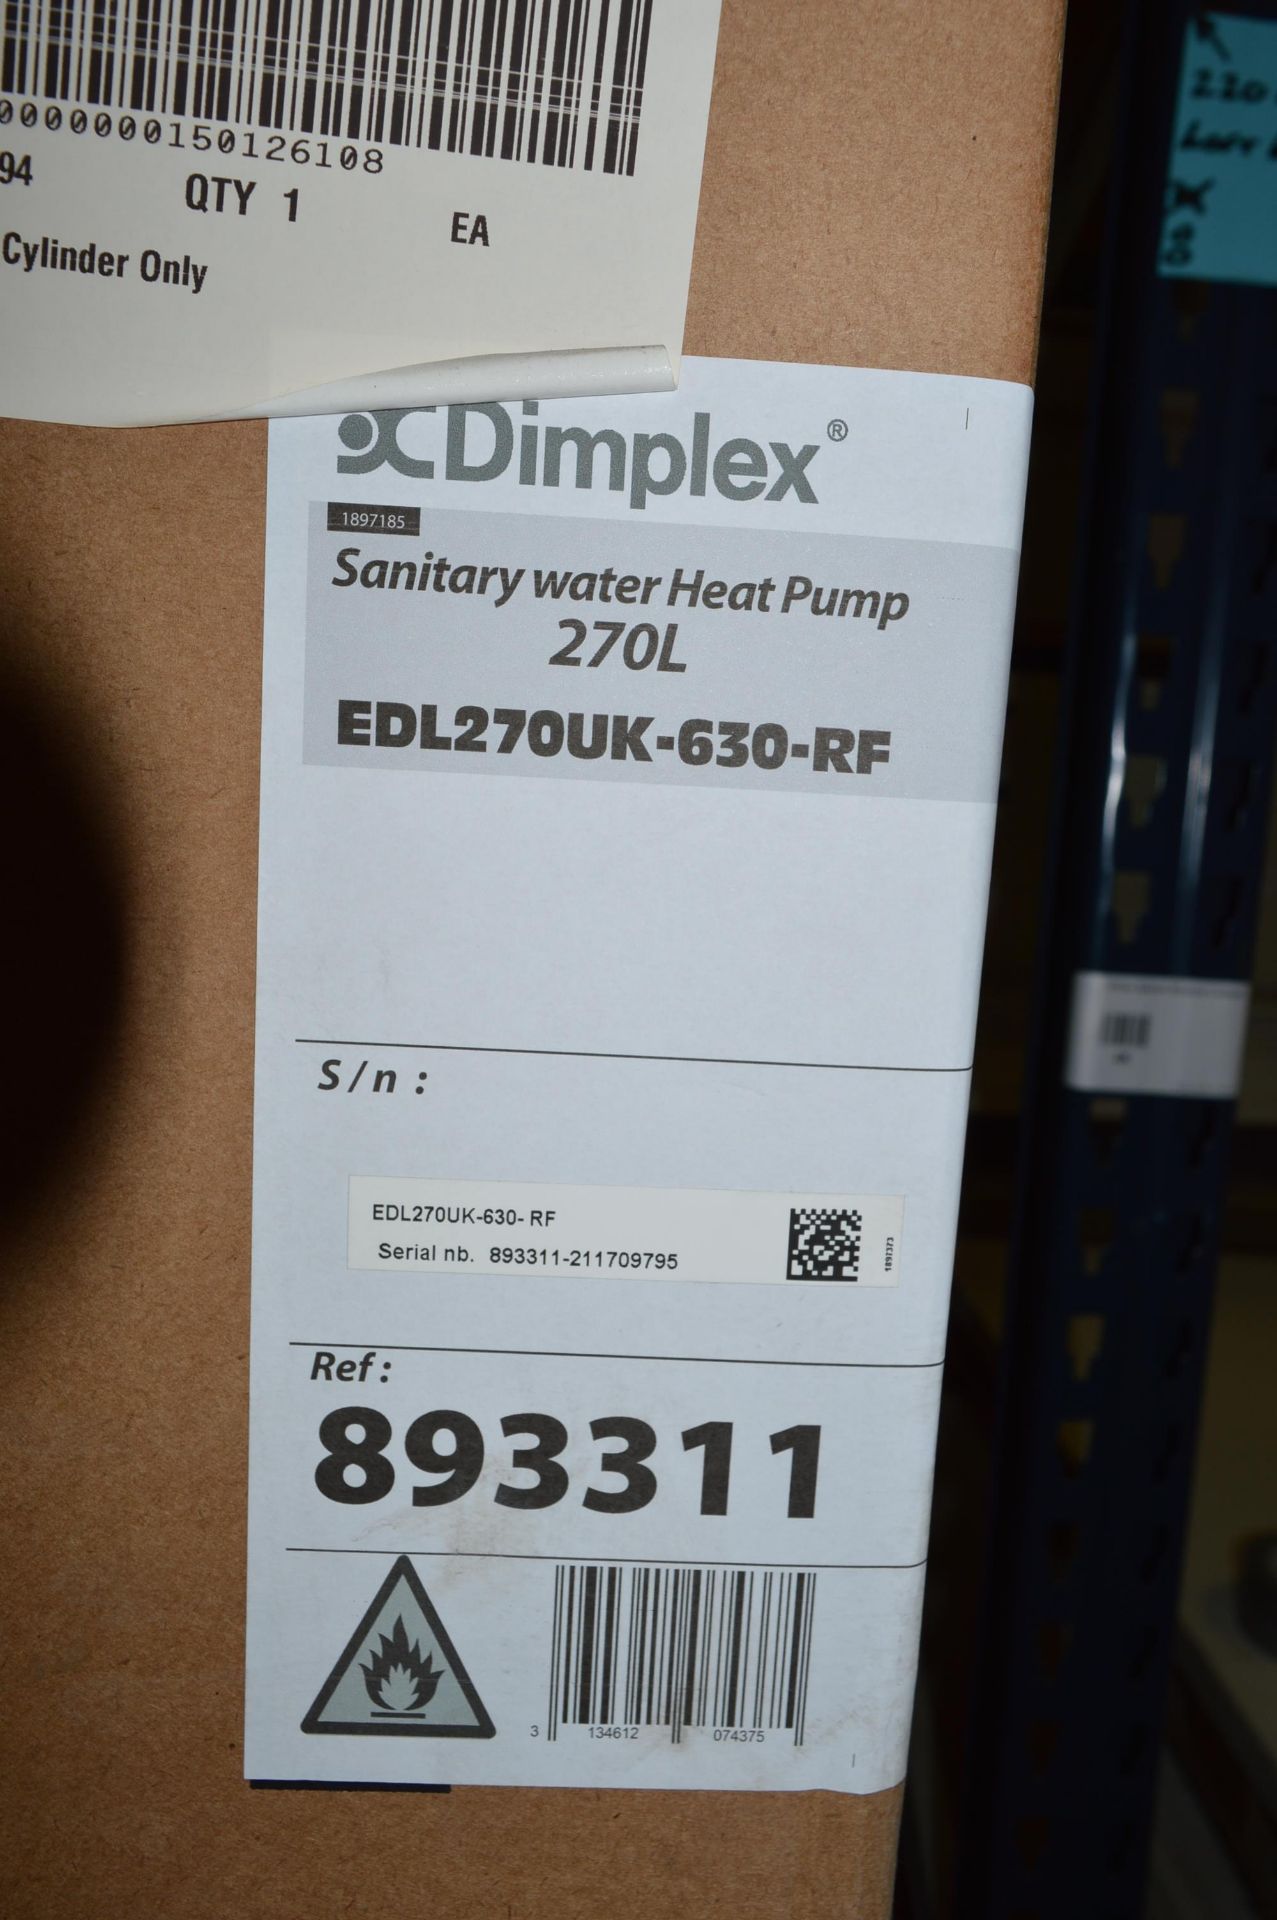 Dimplex, sanitary water heat pump, 270L, Model EDL270UK-630-RF, Serial No. 893311-211709795 ( - Image 2 of 2